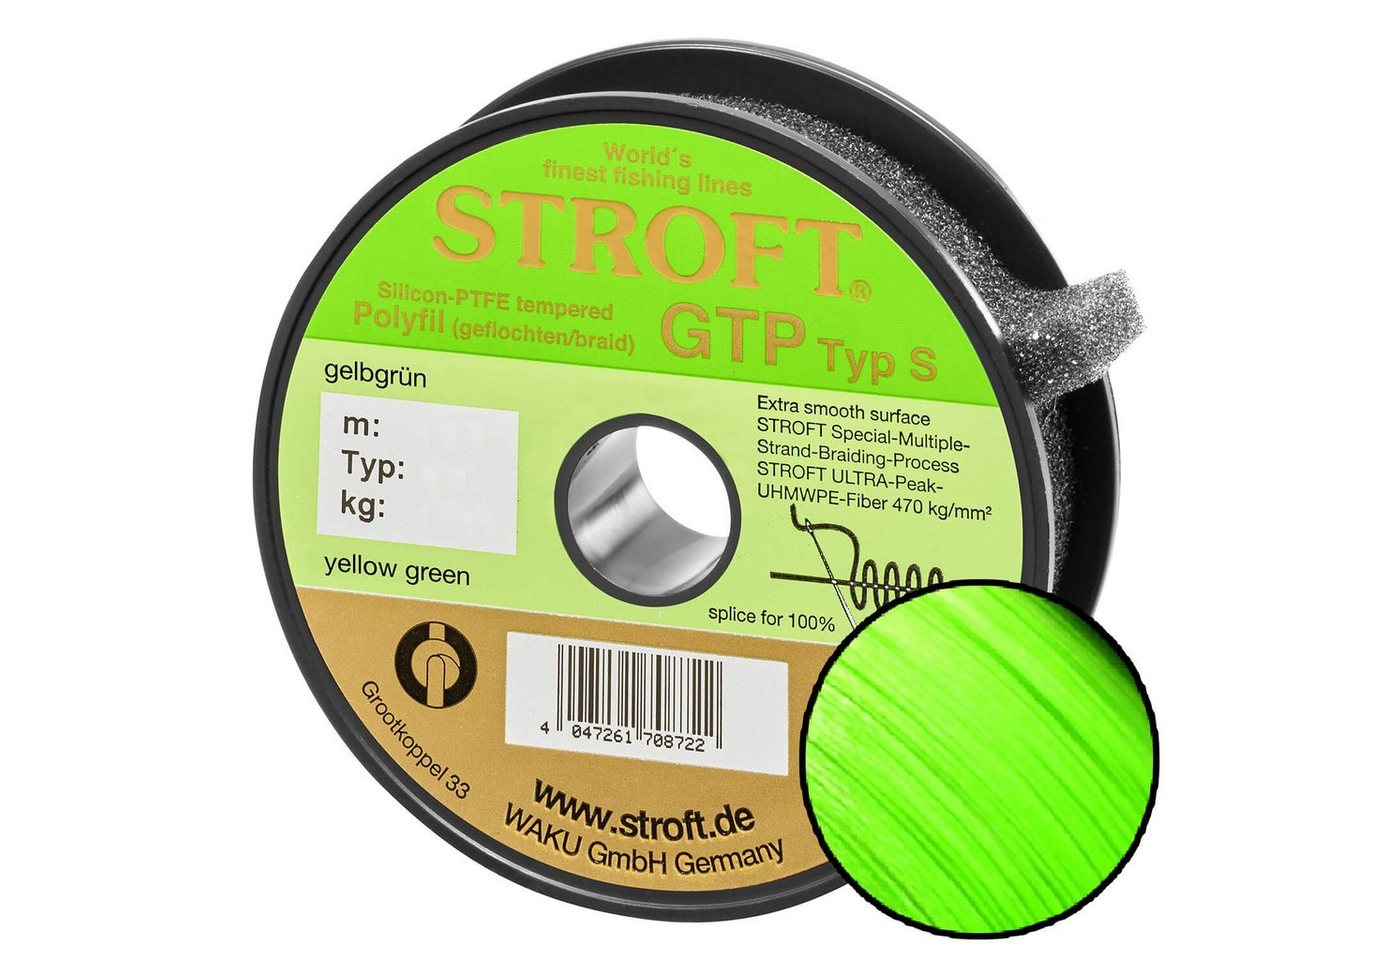 Stroft Angelschnur STROFT GTP Typ S Geflochtene Angelschnur 300m Gelbgrün, 300 m Länge, 0.22 mm Fadendurchmesser, (1-St), 10.0kg Tragkraft von Stroft